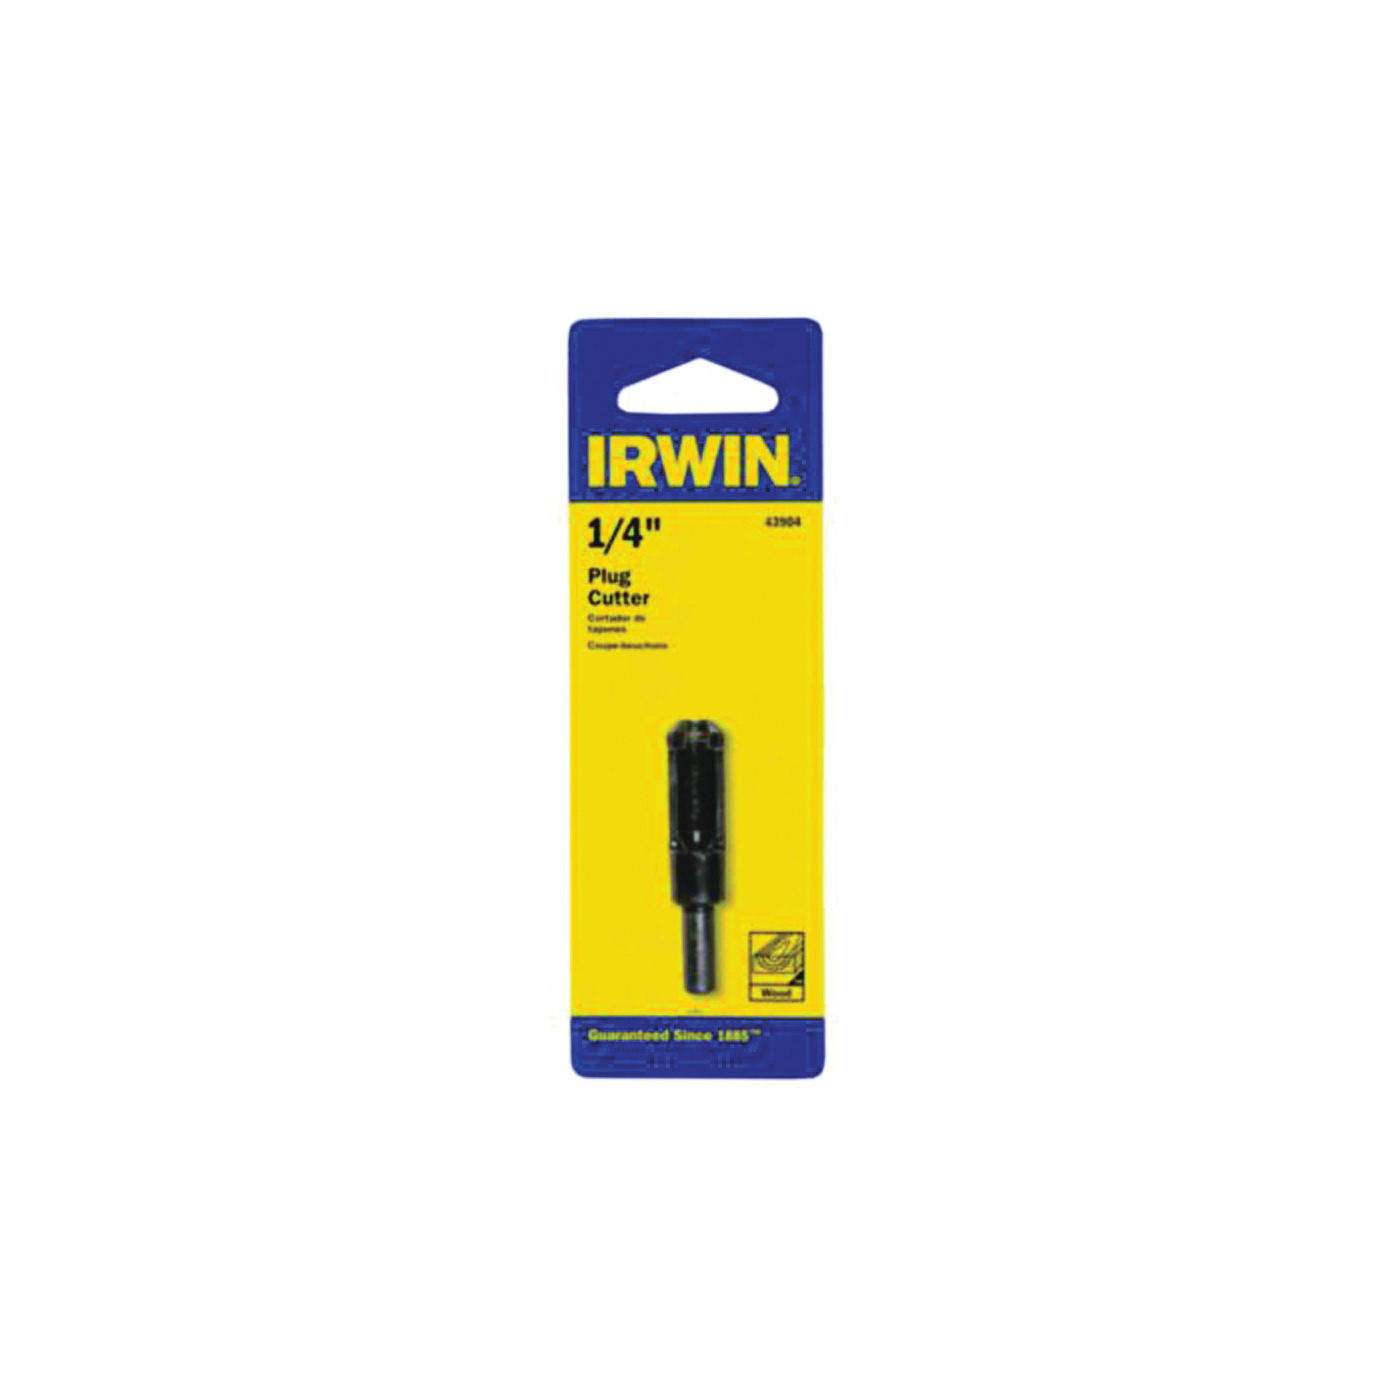 IRWIN 43904 Plug Cutter, 1/4 in Dia Cutter, 1/4 in Dia Shank, Carbon Steel - 1